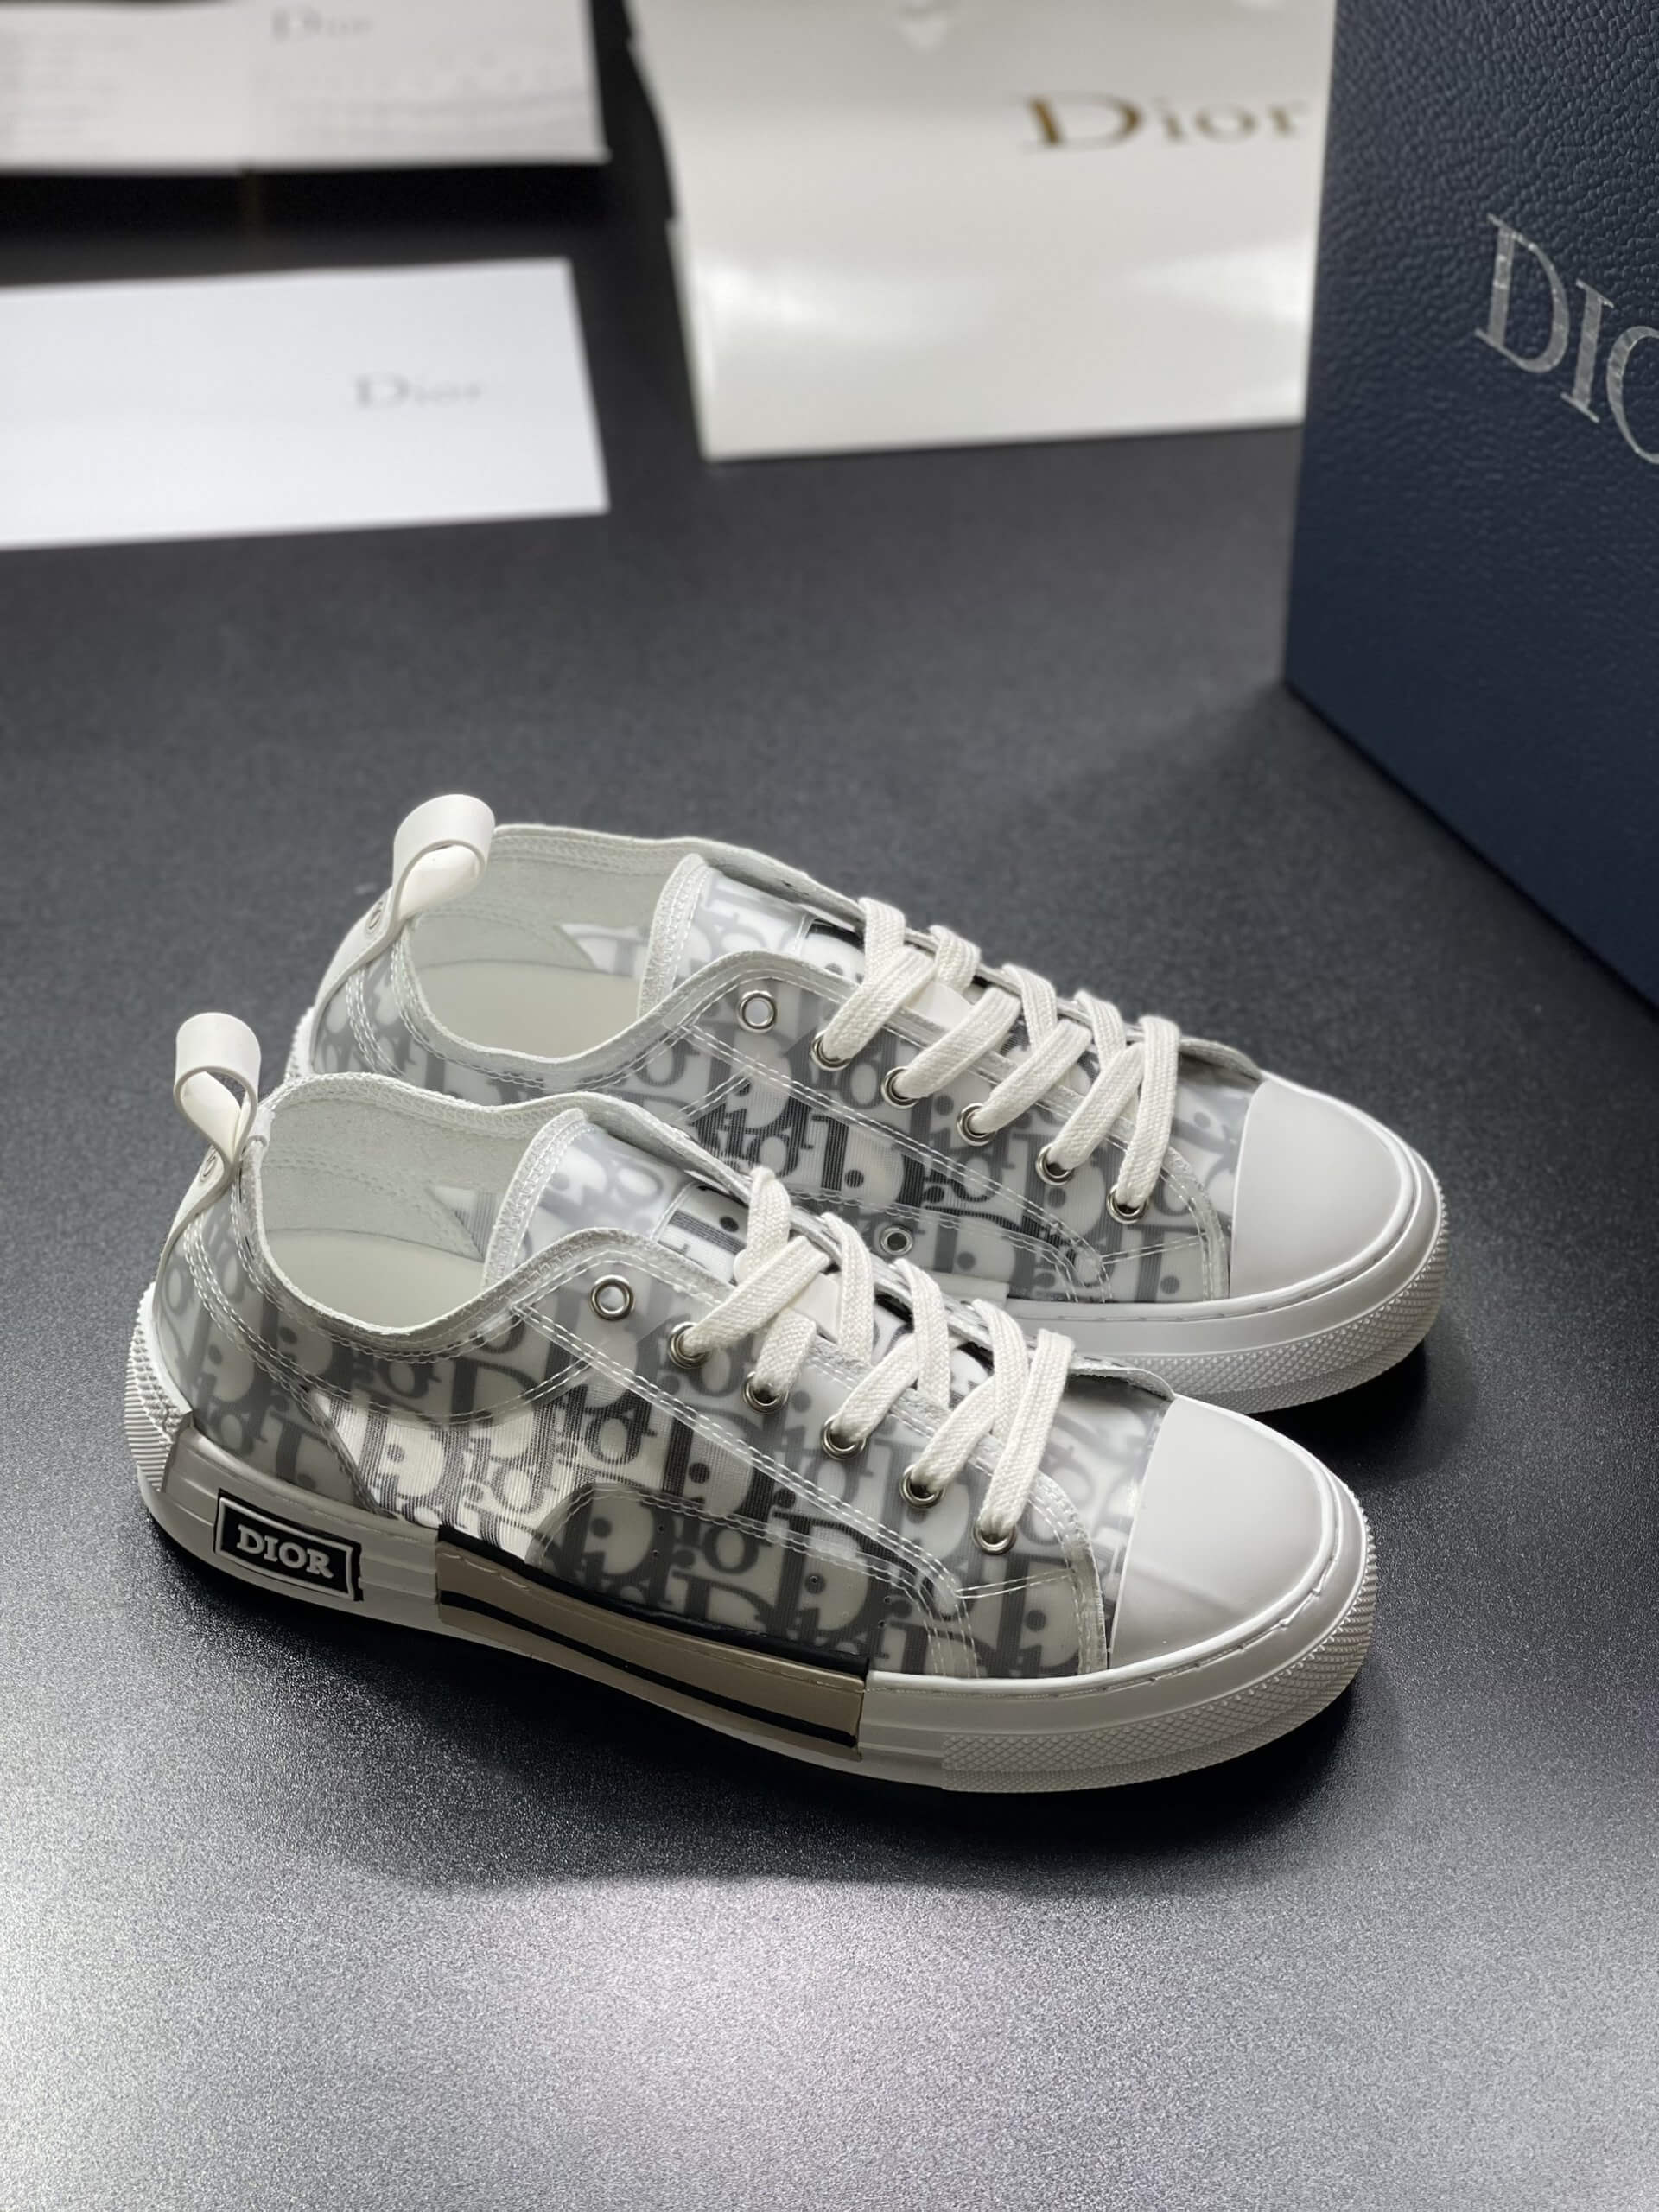 Giày Dior thấp cổ  Cách phối đồ với giày JD Dior thấp cổ